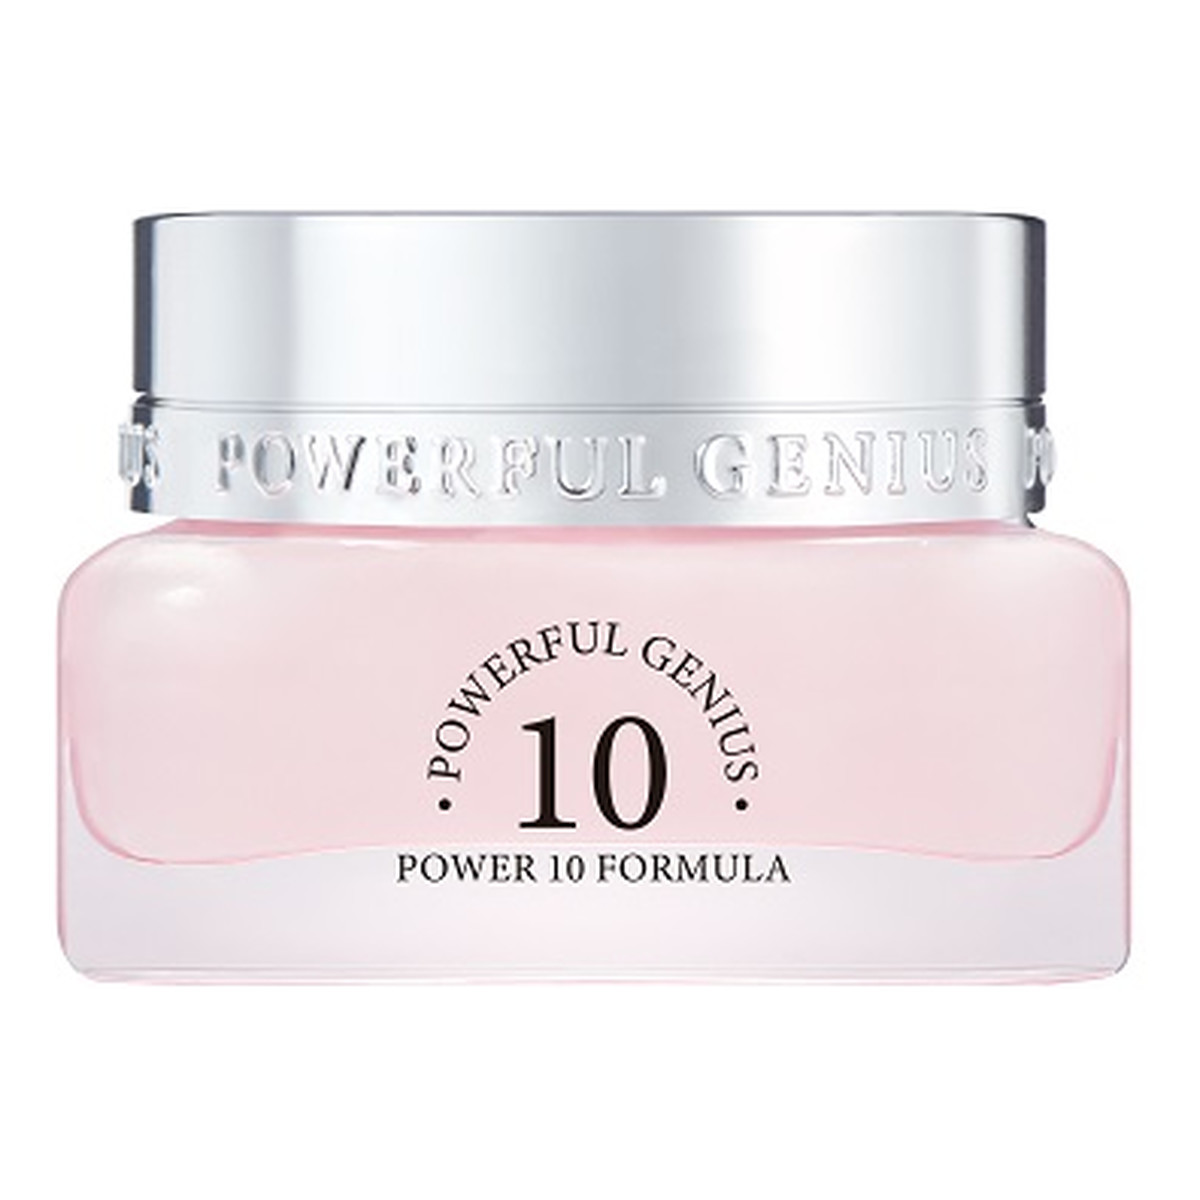 It's Skin Power 10 Formula Powerful Genius Cream odmładzająco-naprawczy Krem do twarzy 45ml